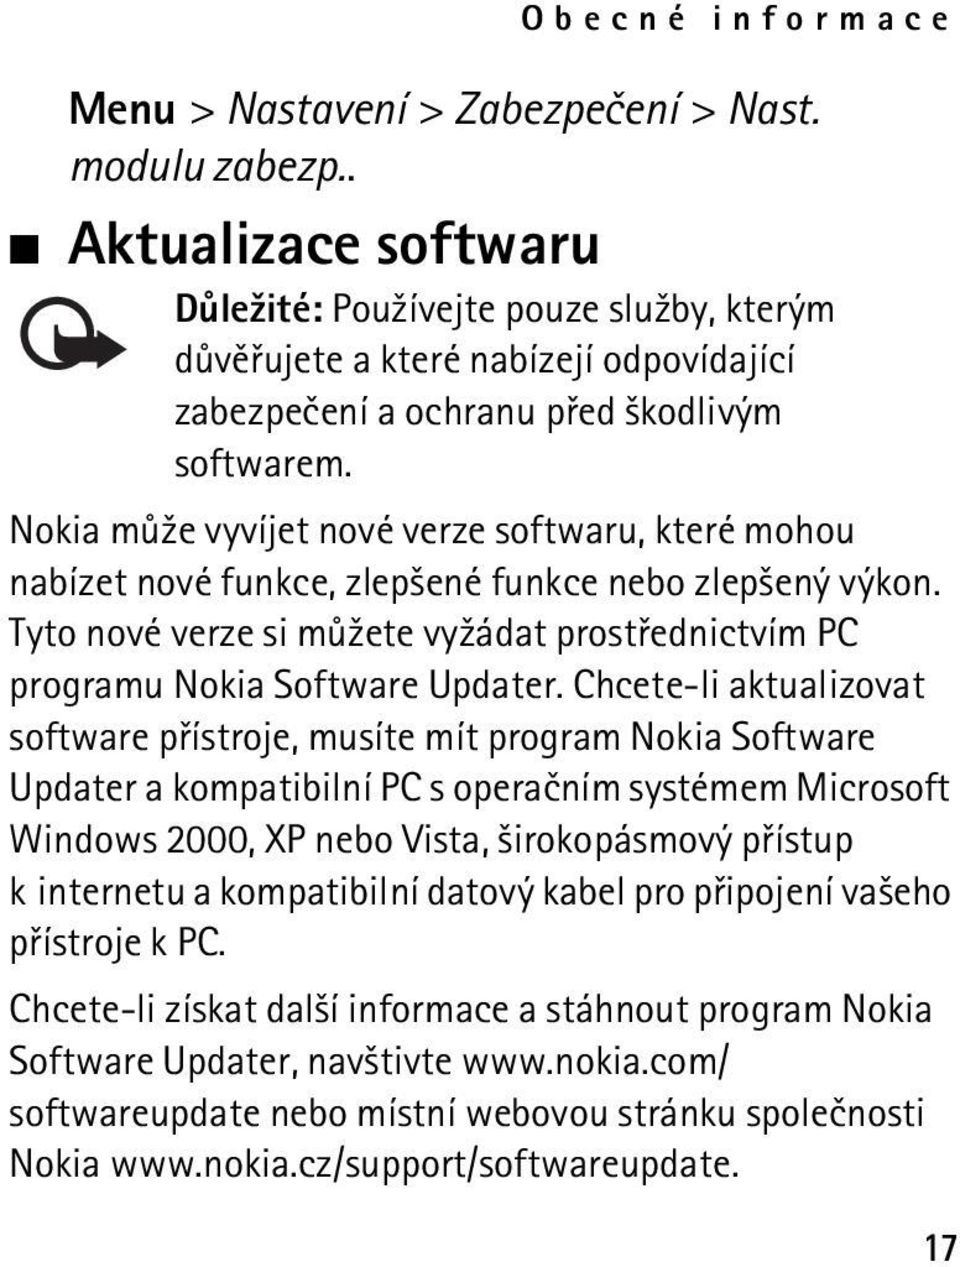 Nokia mù¾e vyvíjet nové verze softwaru, které mohou nabízet nové funkce, zlep¹ené funkce nebo zlep¹ený výkon. Tyto nové verze si mù¾ete vy¾ádat prostøednictvím PC programu Nokia Software Updater.